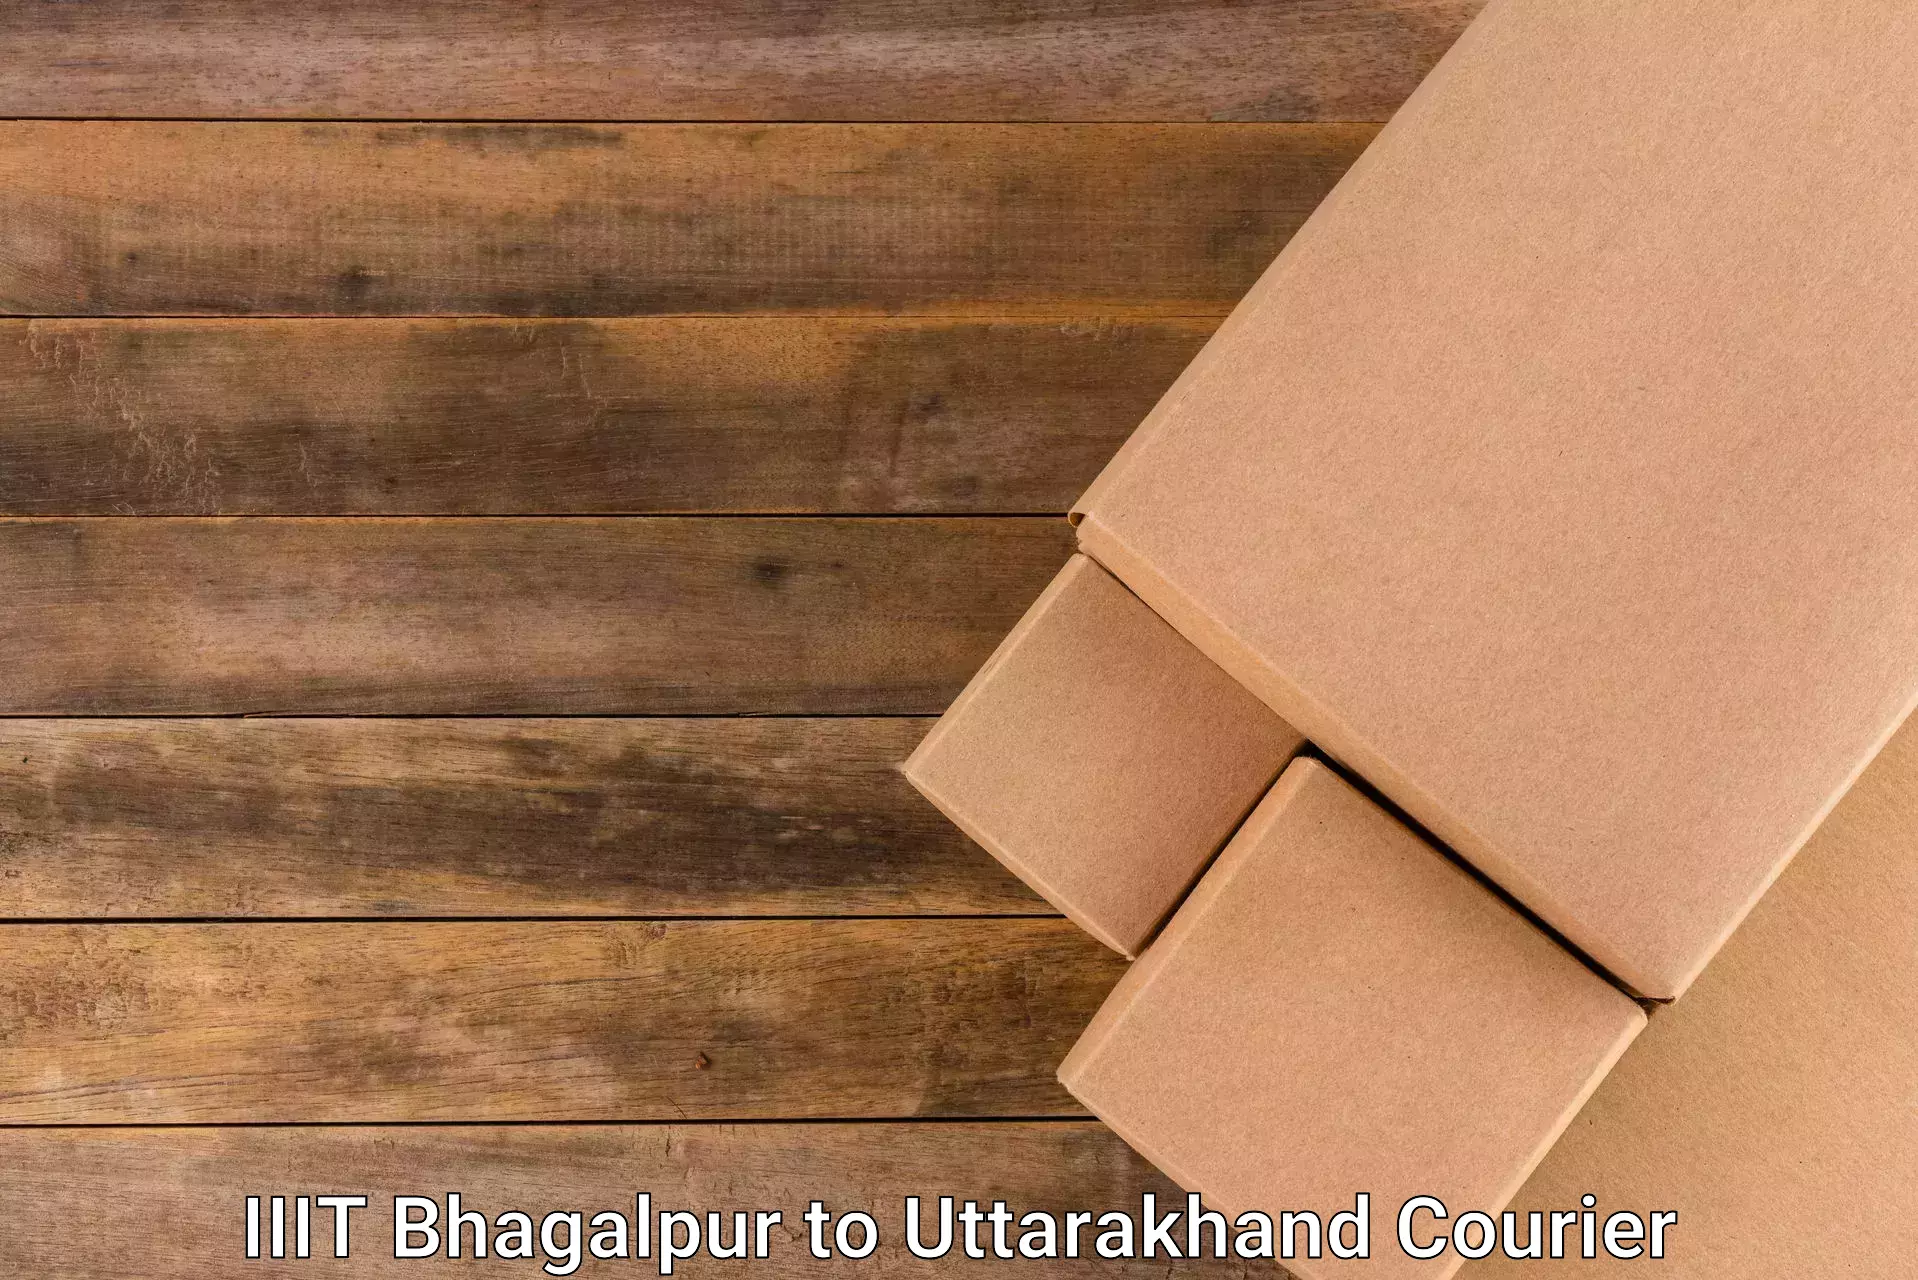 Courier service partnerships IIIT Bhagalpur to Uttarakhand